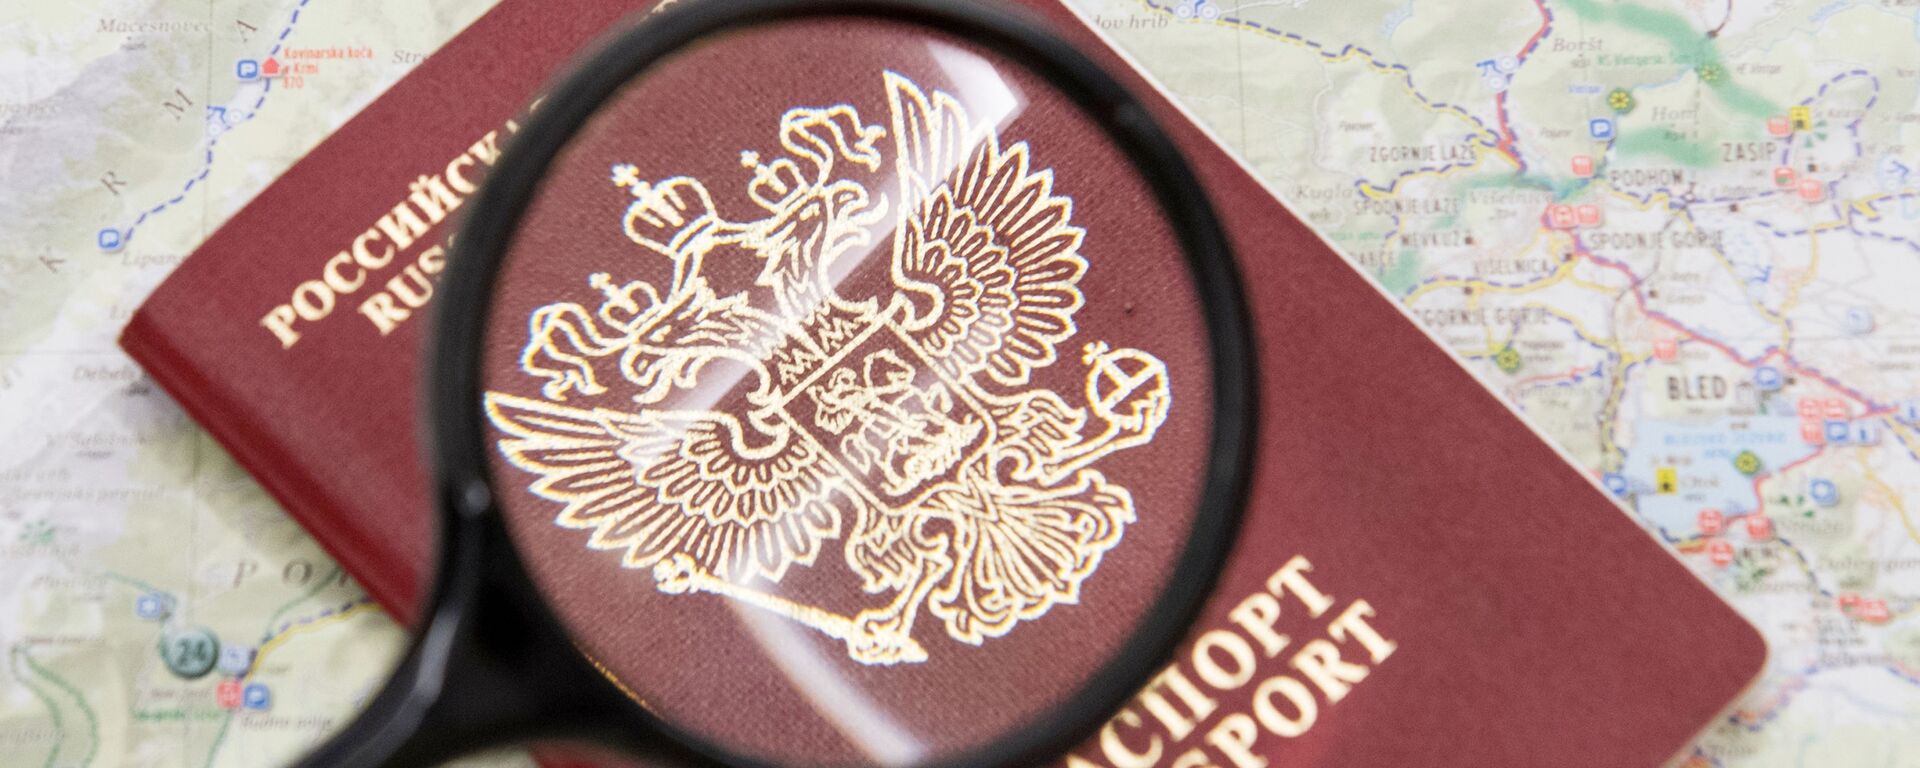 Паспорт гражданина Российской Федерации - Sputnik Узбекистан, 1920, 19.05.2020